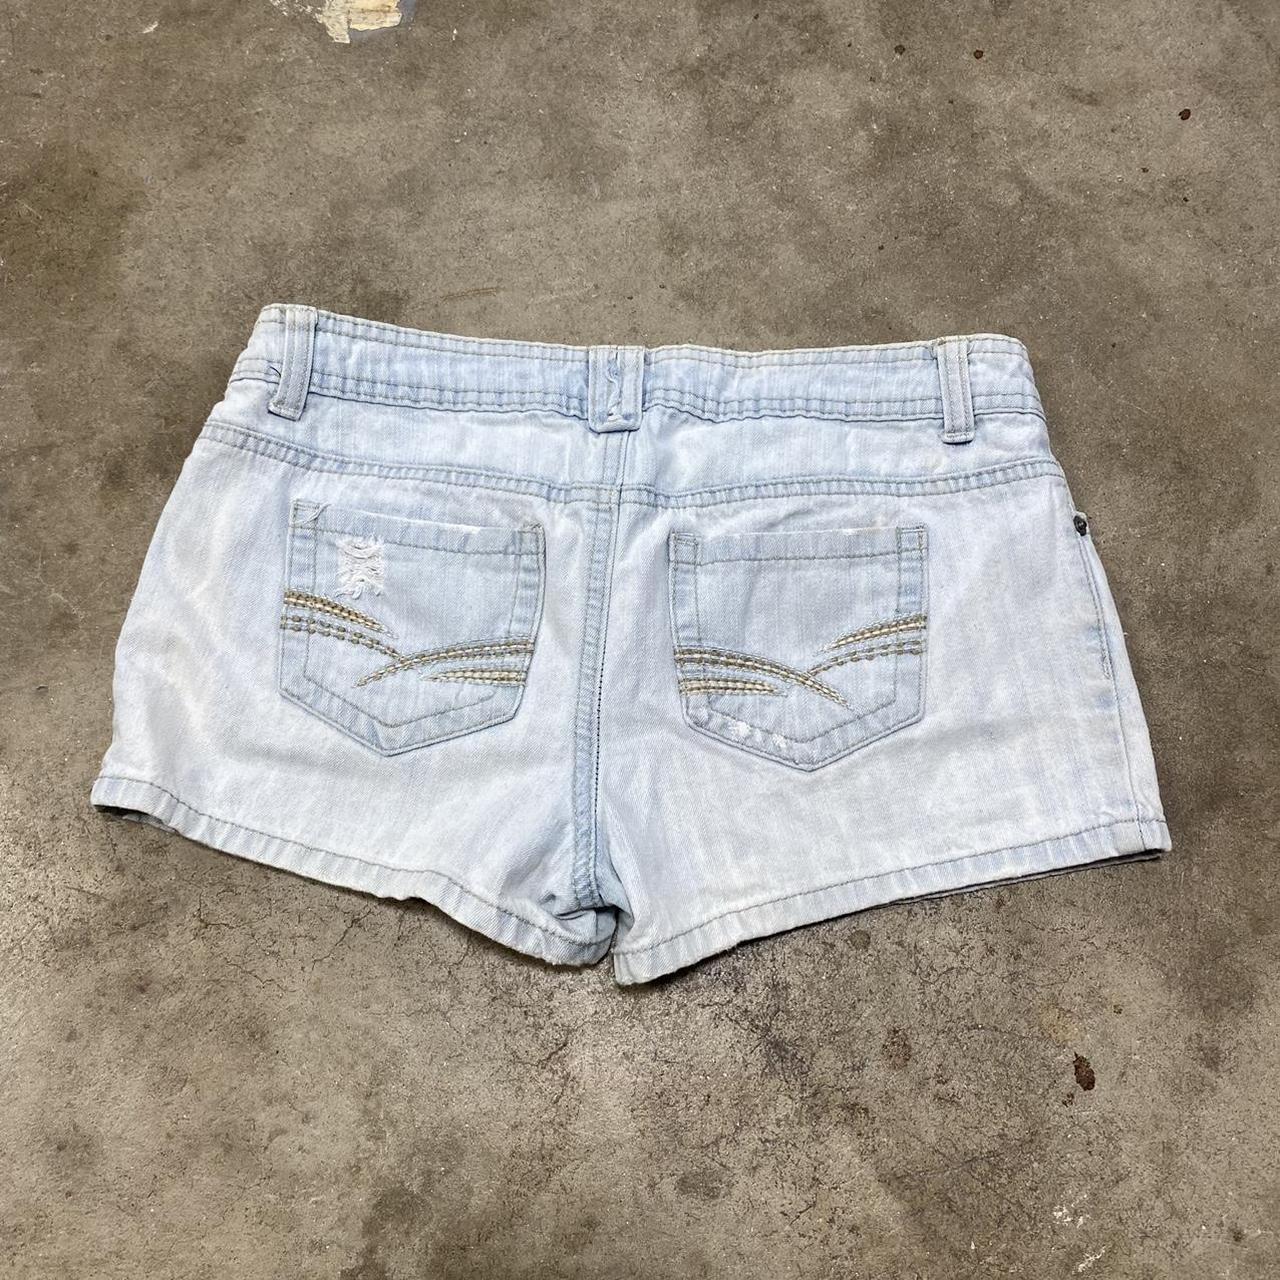 y2k low rise denim booty shorts vintage SO wear it... - Depop